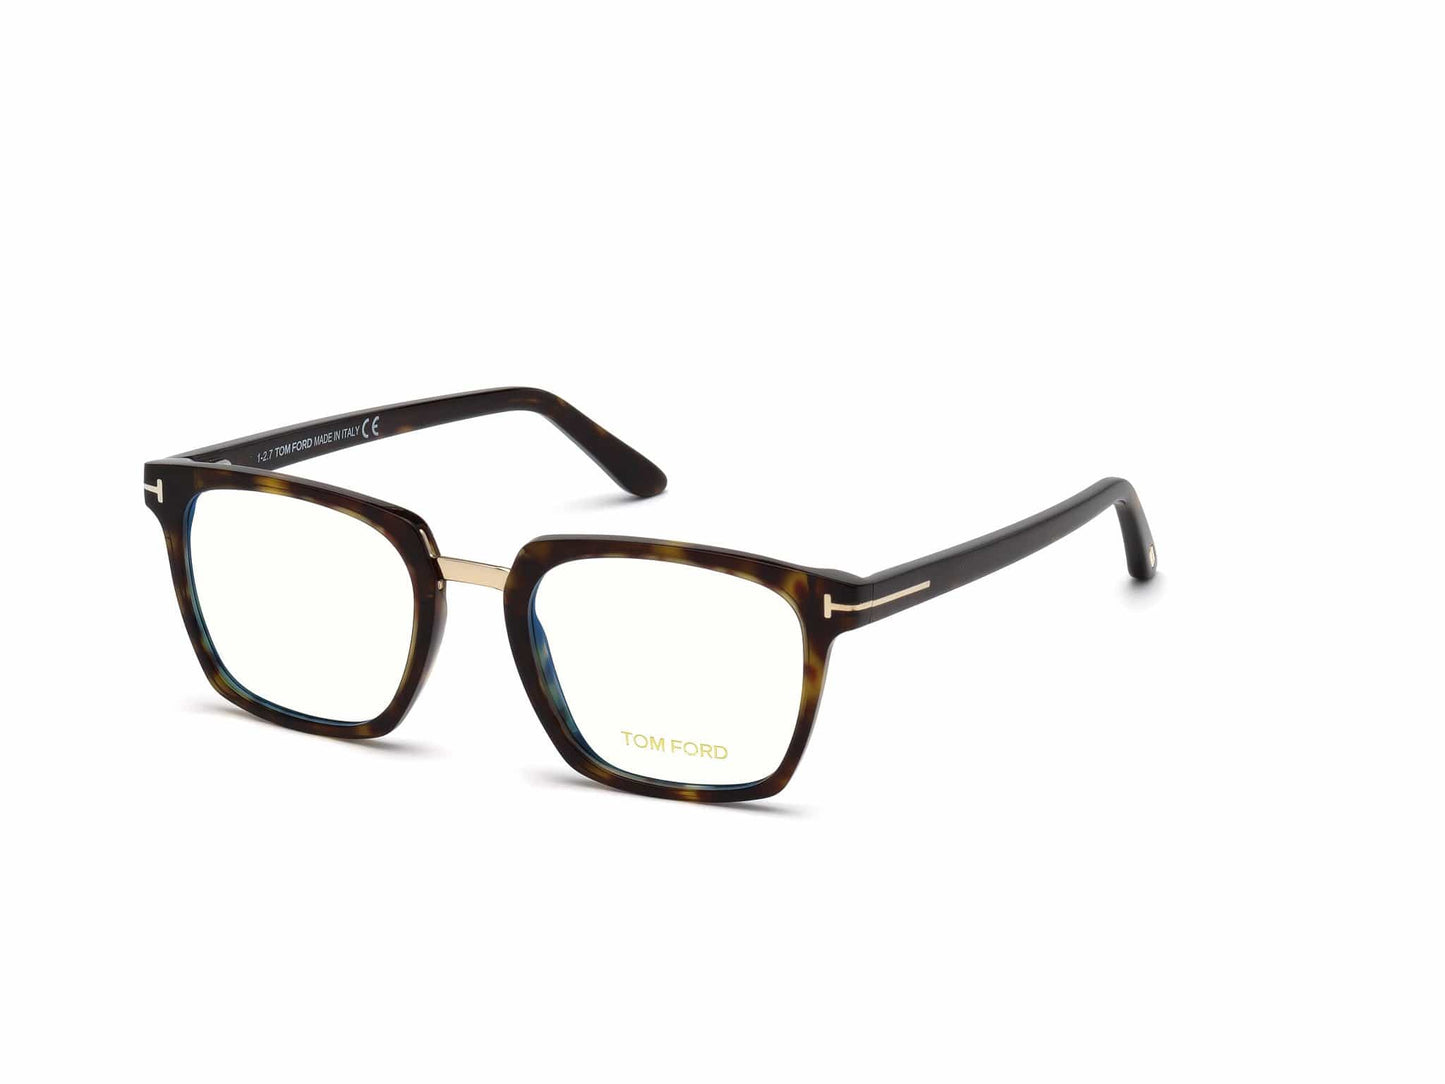 Tom Ford FT5523-B Geometric Eyeglasses 052-052 - Classic Dark Havana, Rose Gold Bridge & "t" Logo/ Blue Block Lenses